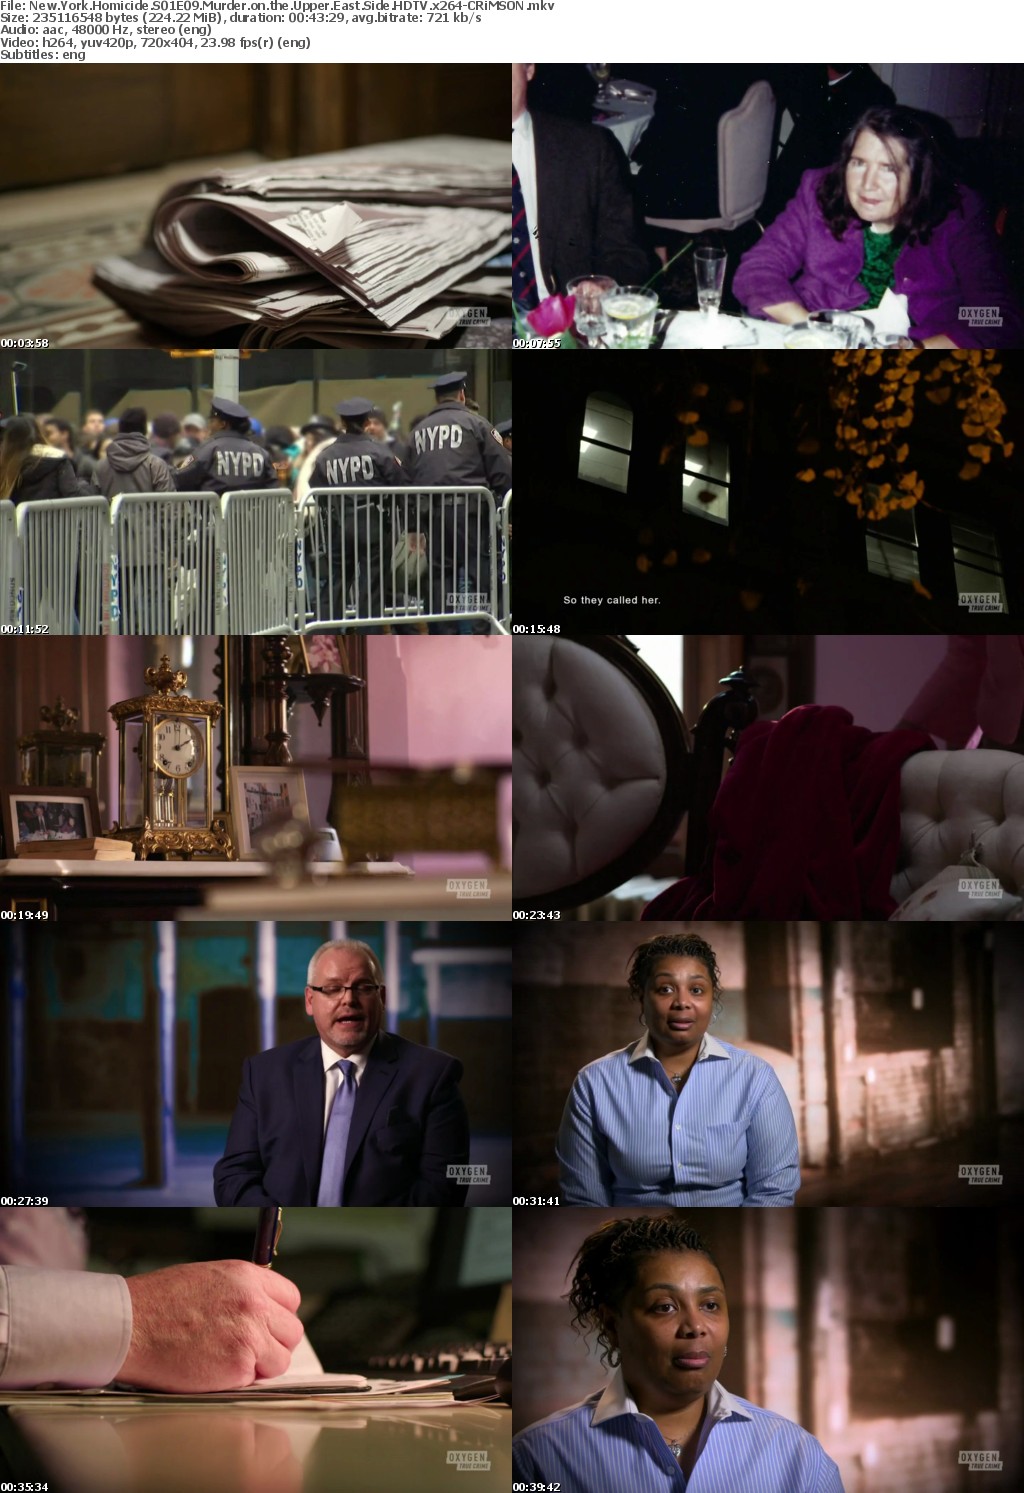 New York Homicide S01E09 Murder on the Upper East Side HDTV x264-CRiMSON